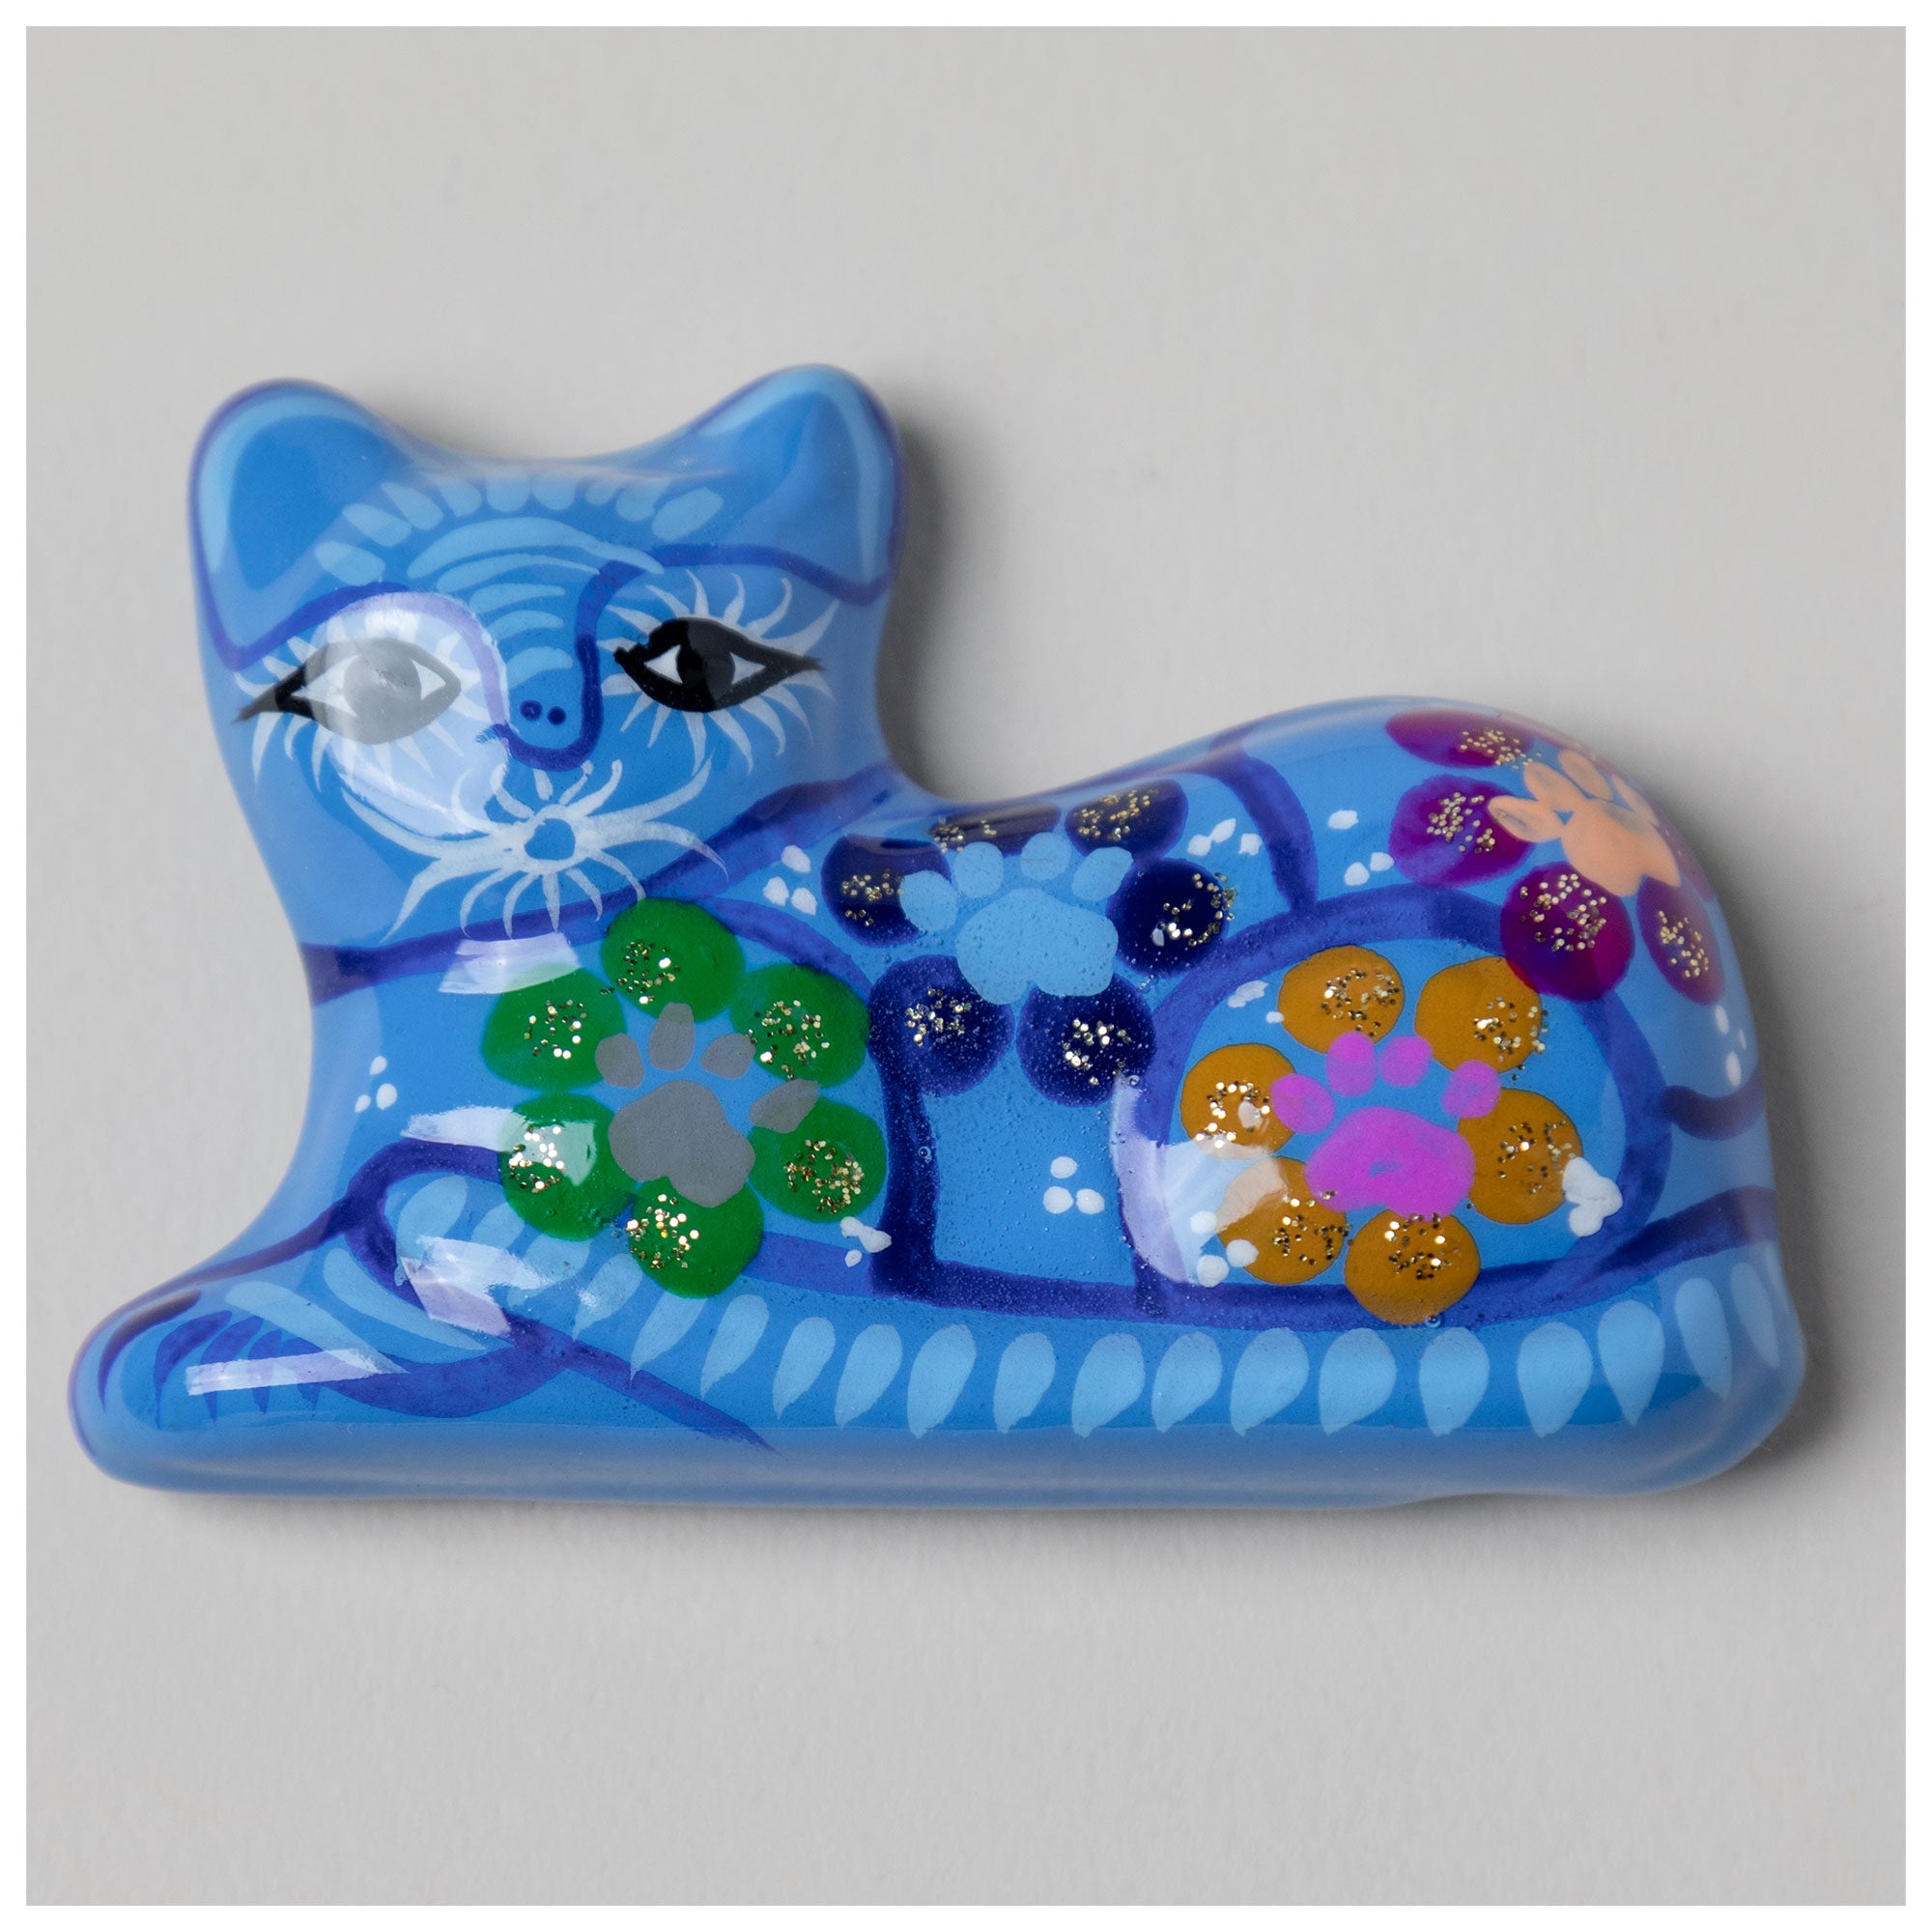 Hand-Painted Ceramic Cat Magnet - Blue